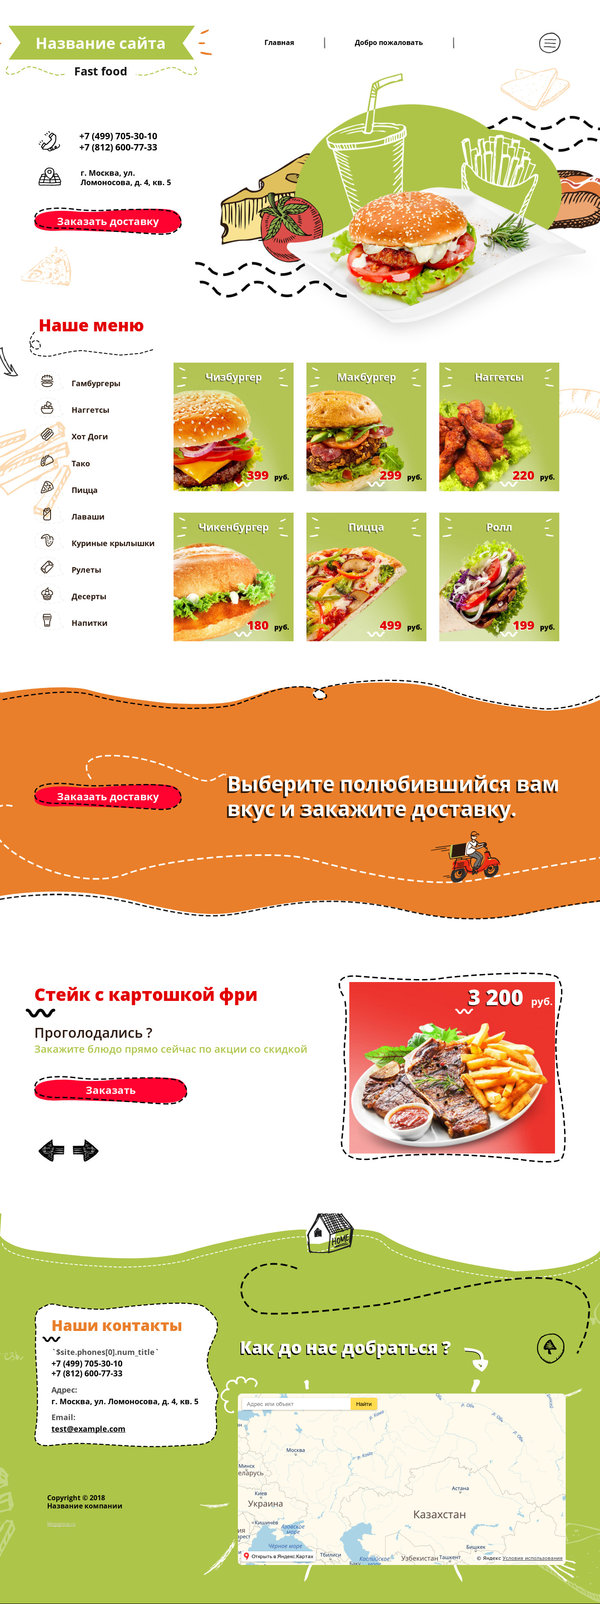 Готовый Сайт-Бизнес № 2083620 - Fast Food (Десктопная версия)